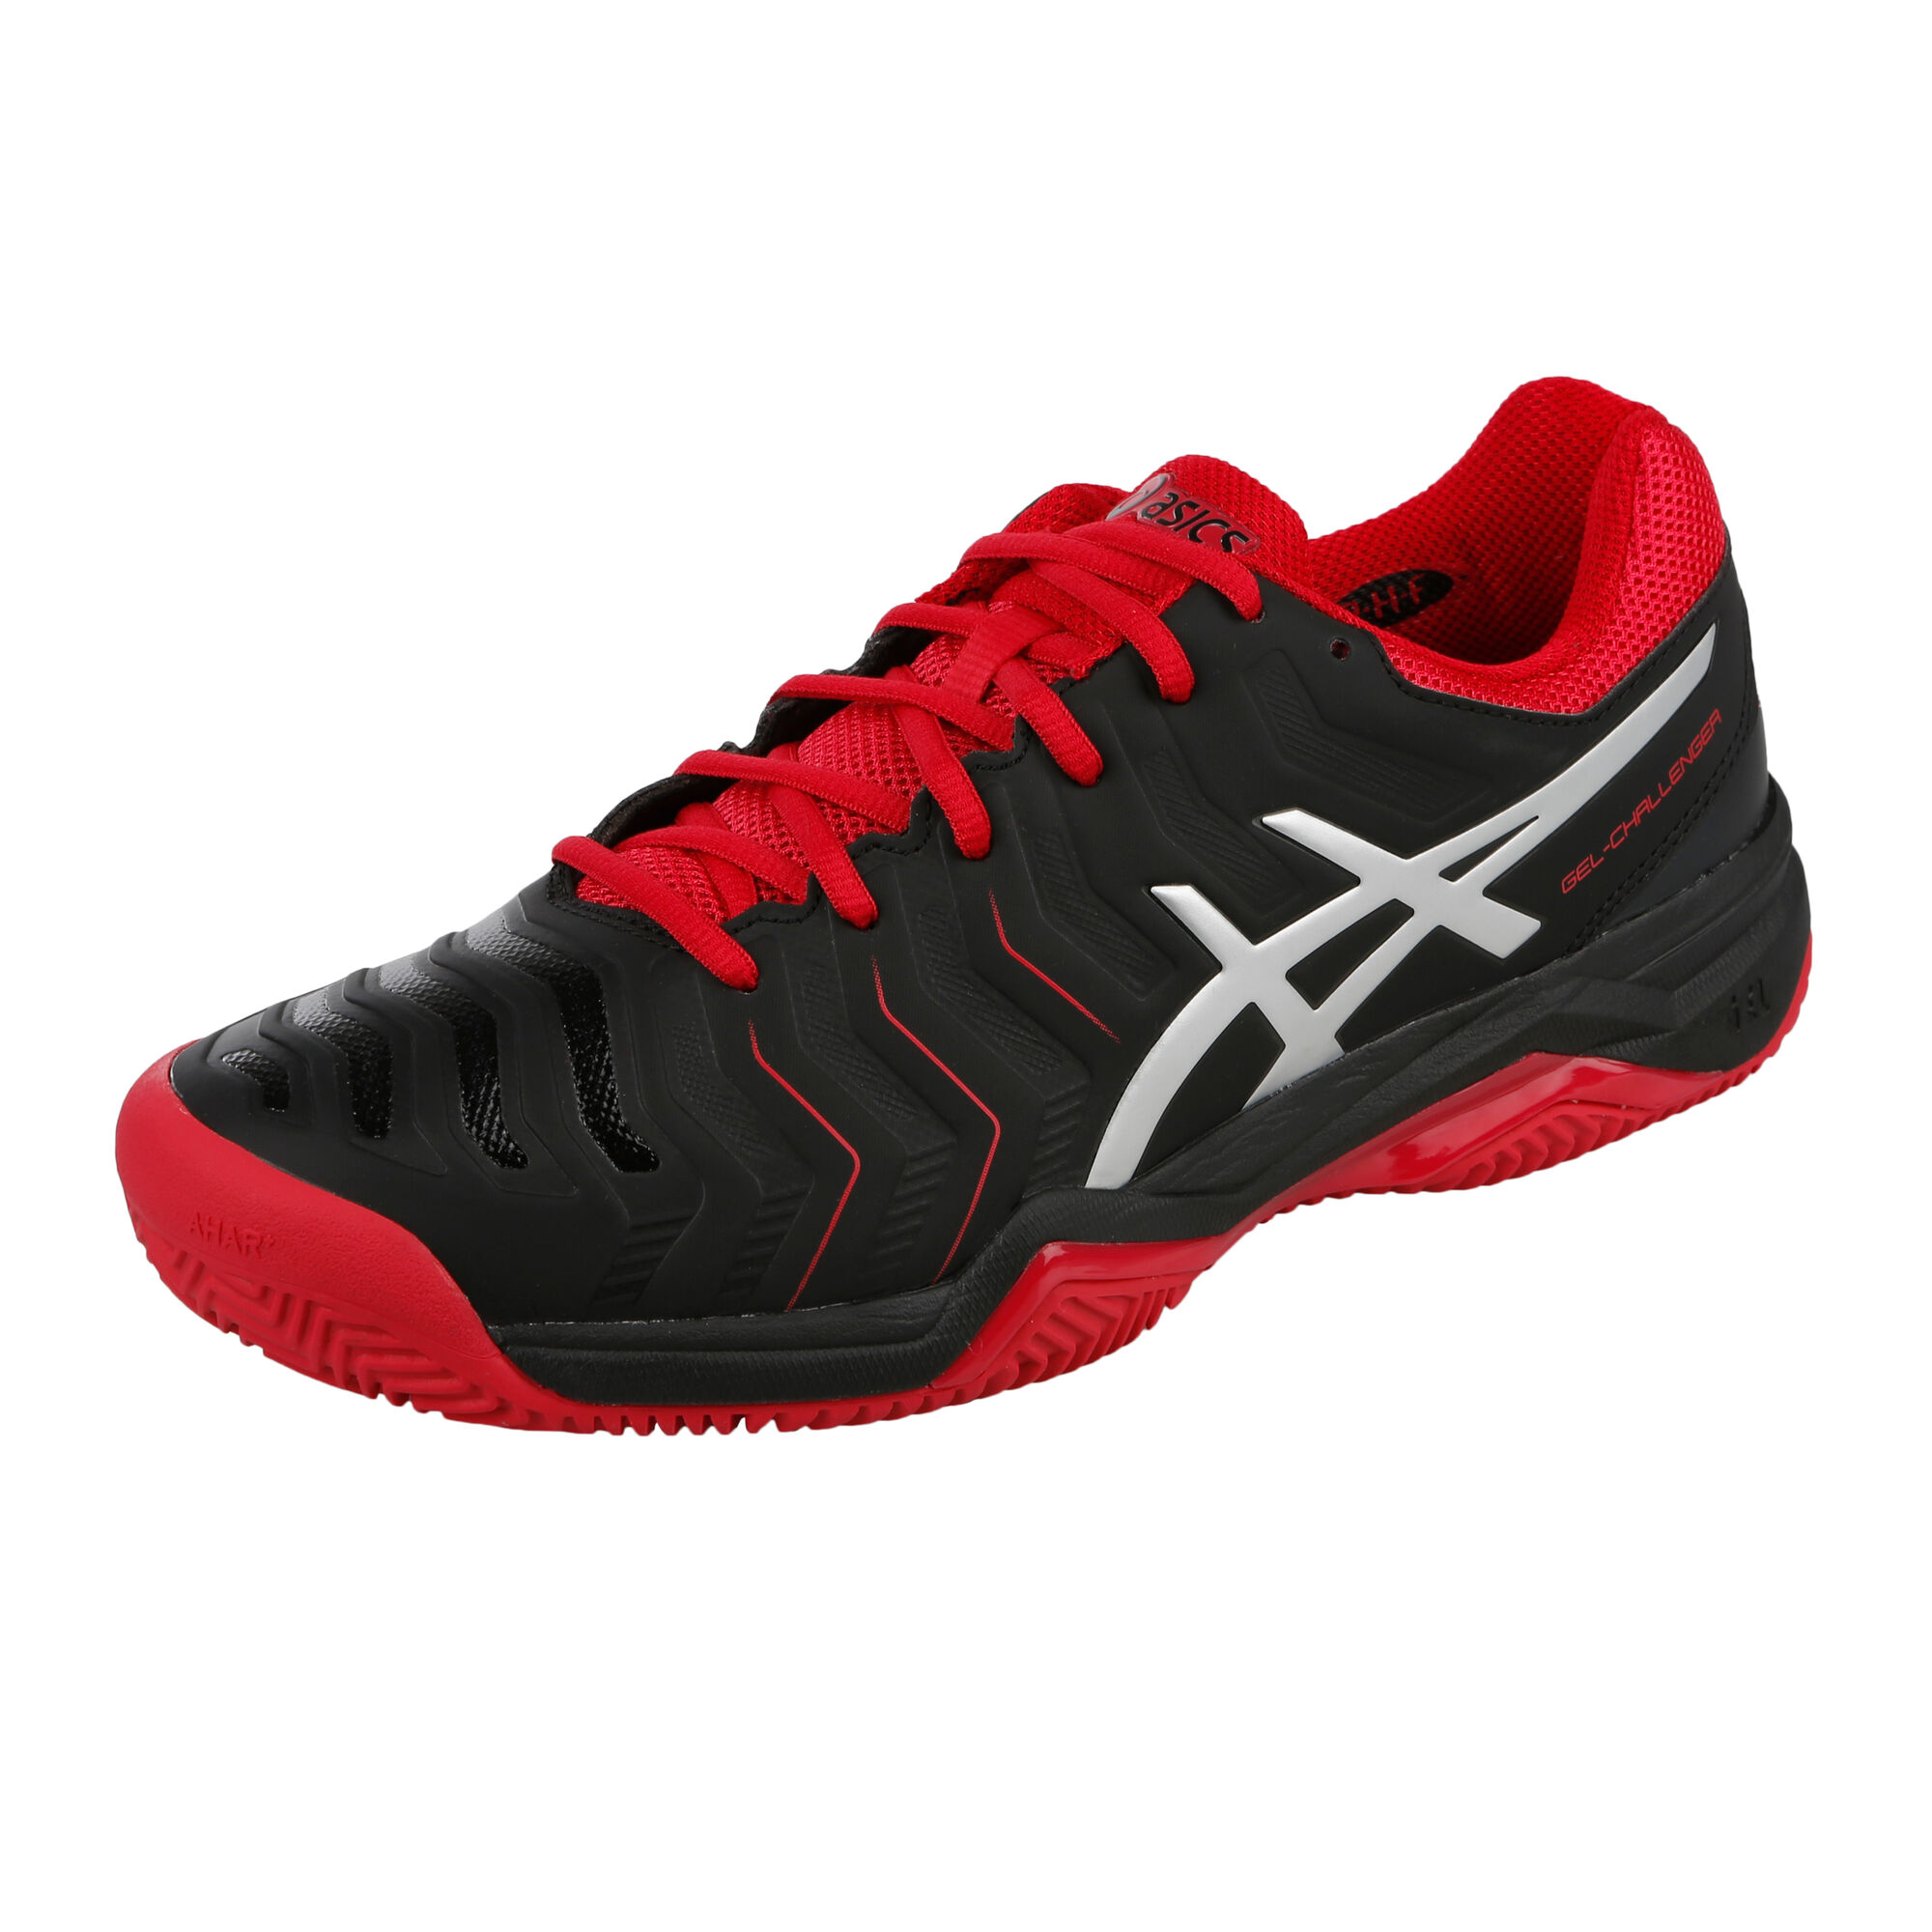 11 Clay Court Shoe Men - Black, Red online | Tennis-Point